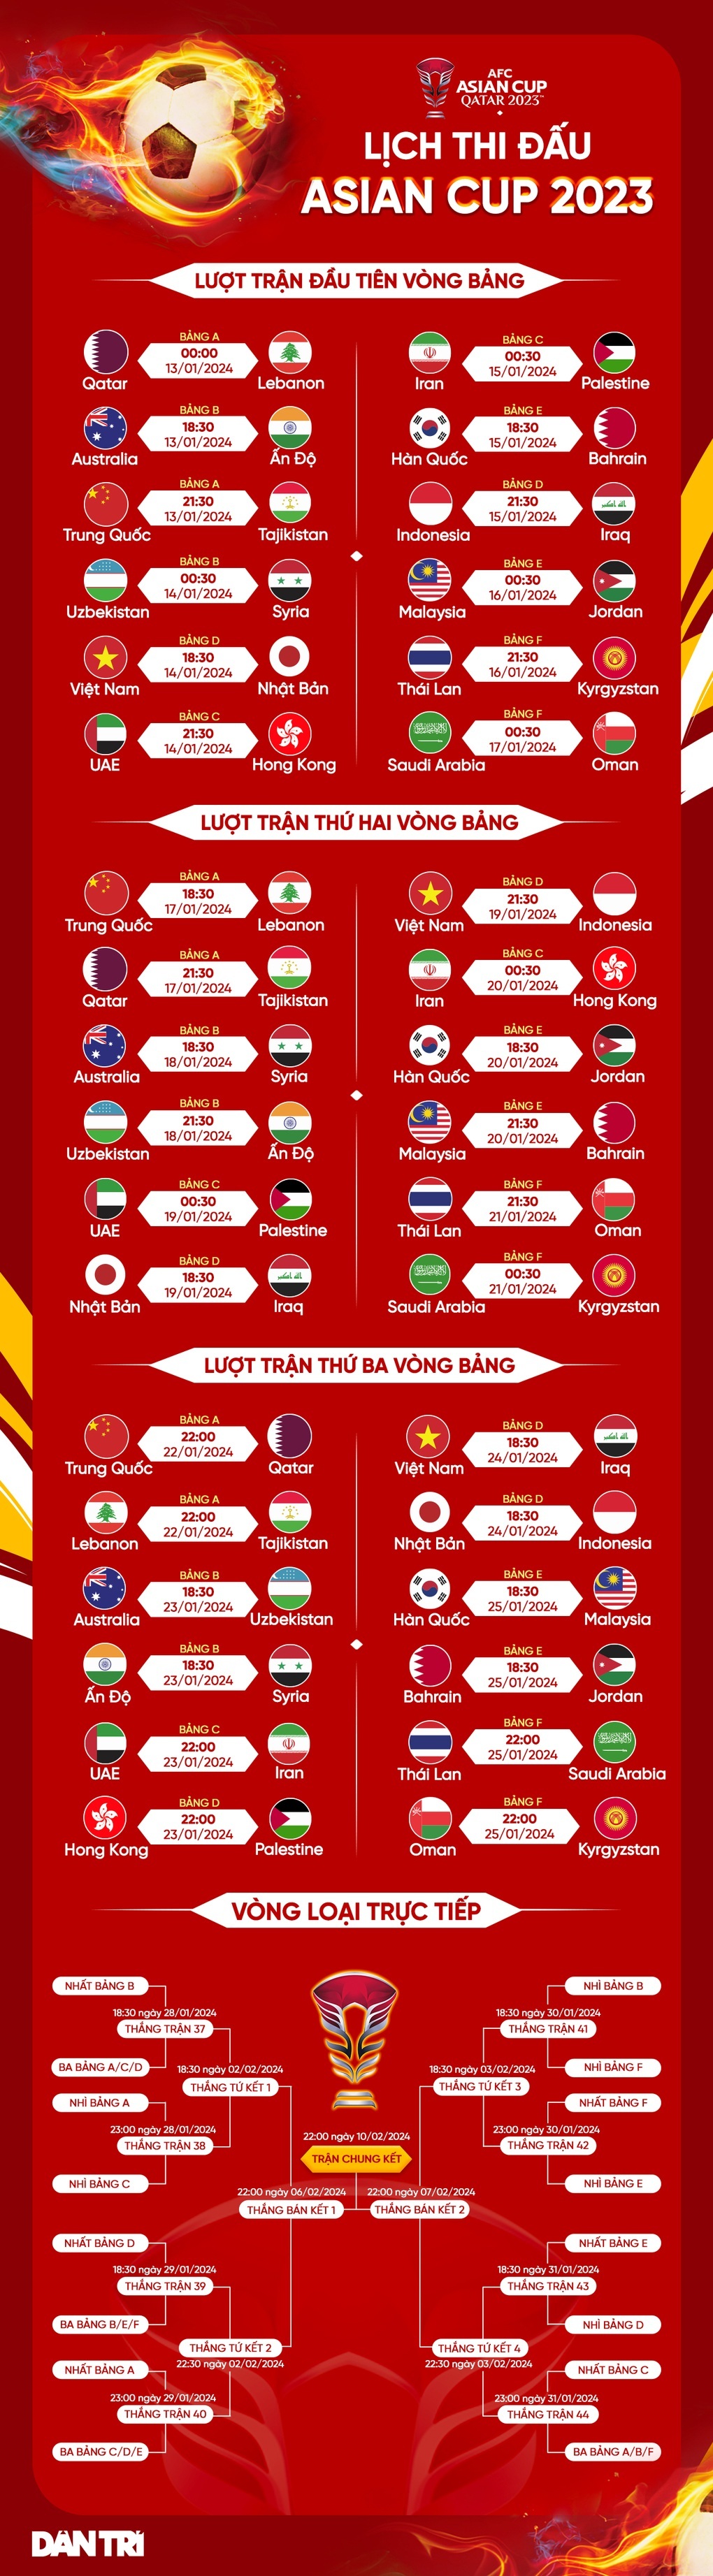 Asian Cup bất ngờ đổi quy chế, đội tuyển Việt Nam hưởng lợi - 2